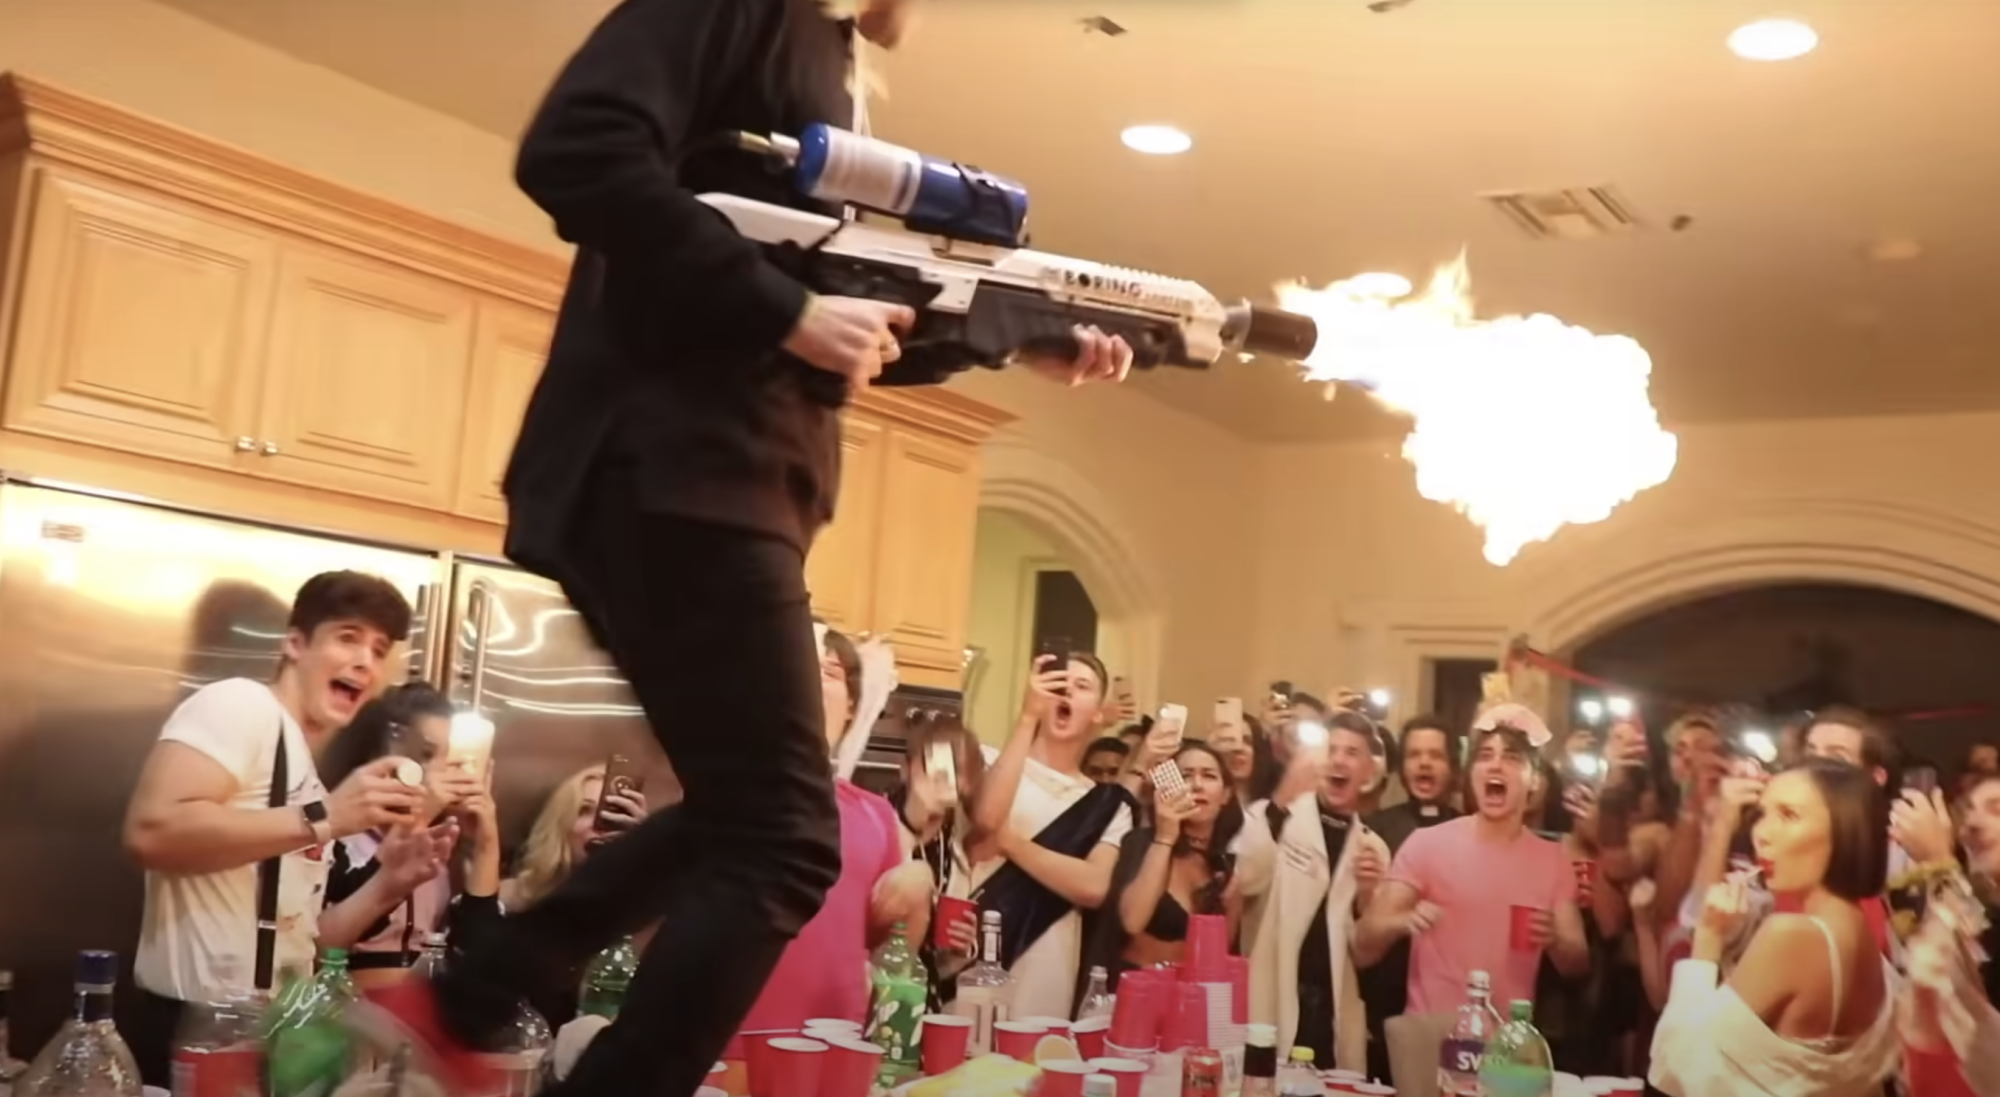 Dobrik brandit un lance-flammes de la Boring Company dans un vlog intitulé 